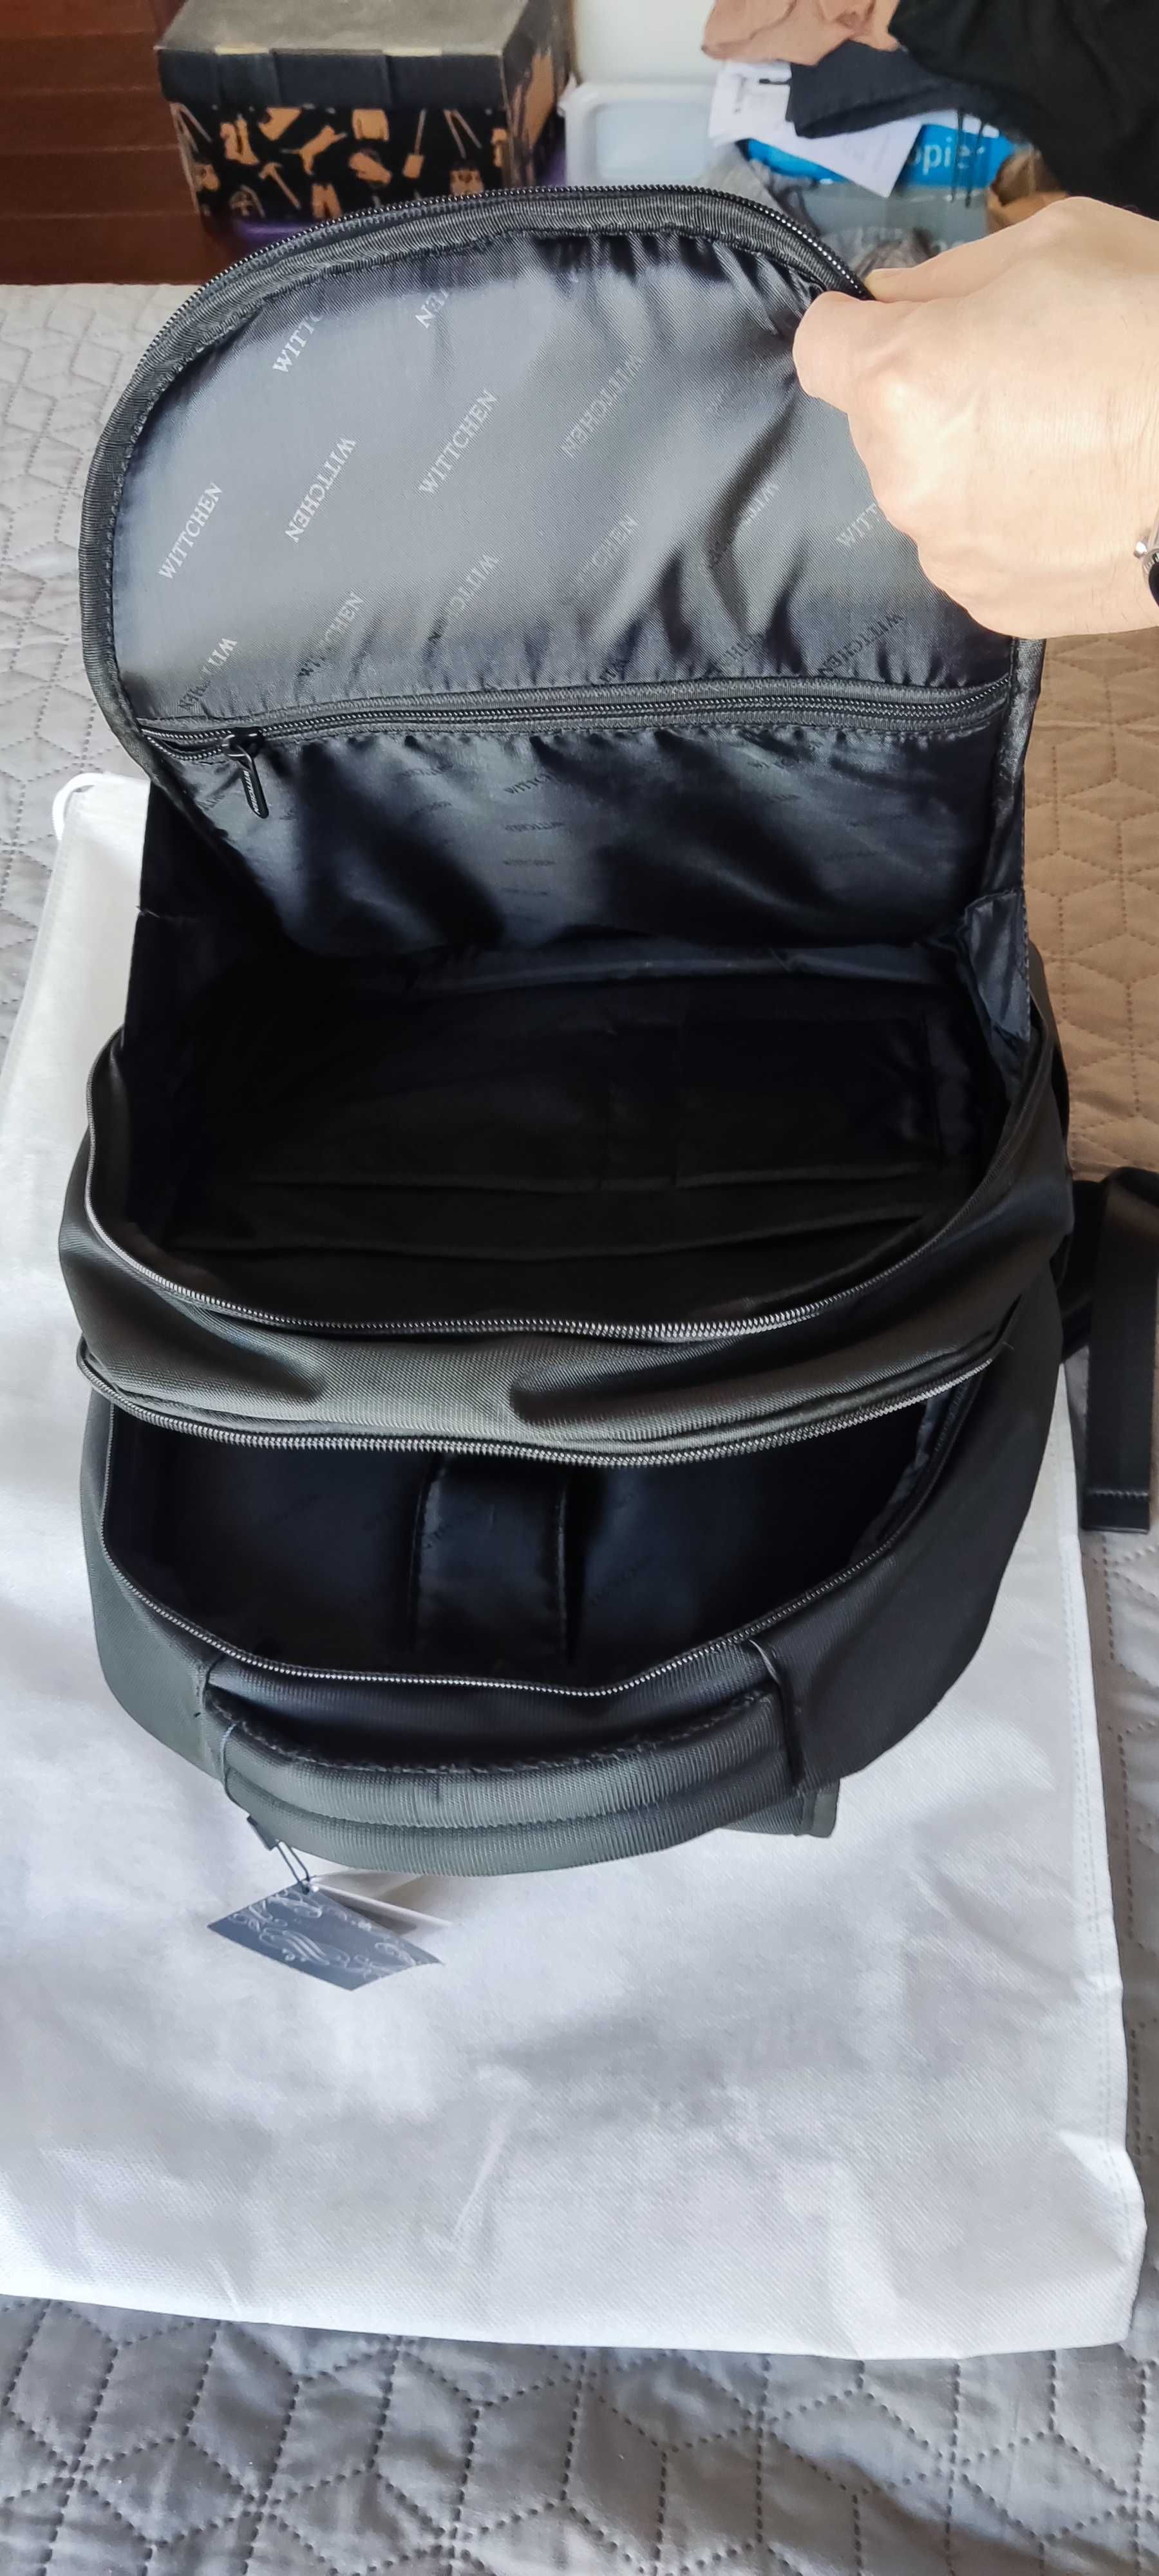 nowy plecak WITTCHEN, męski duży plecak na laptopa 15,6 cala